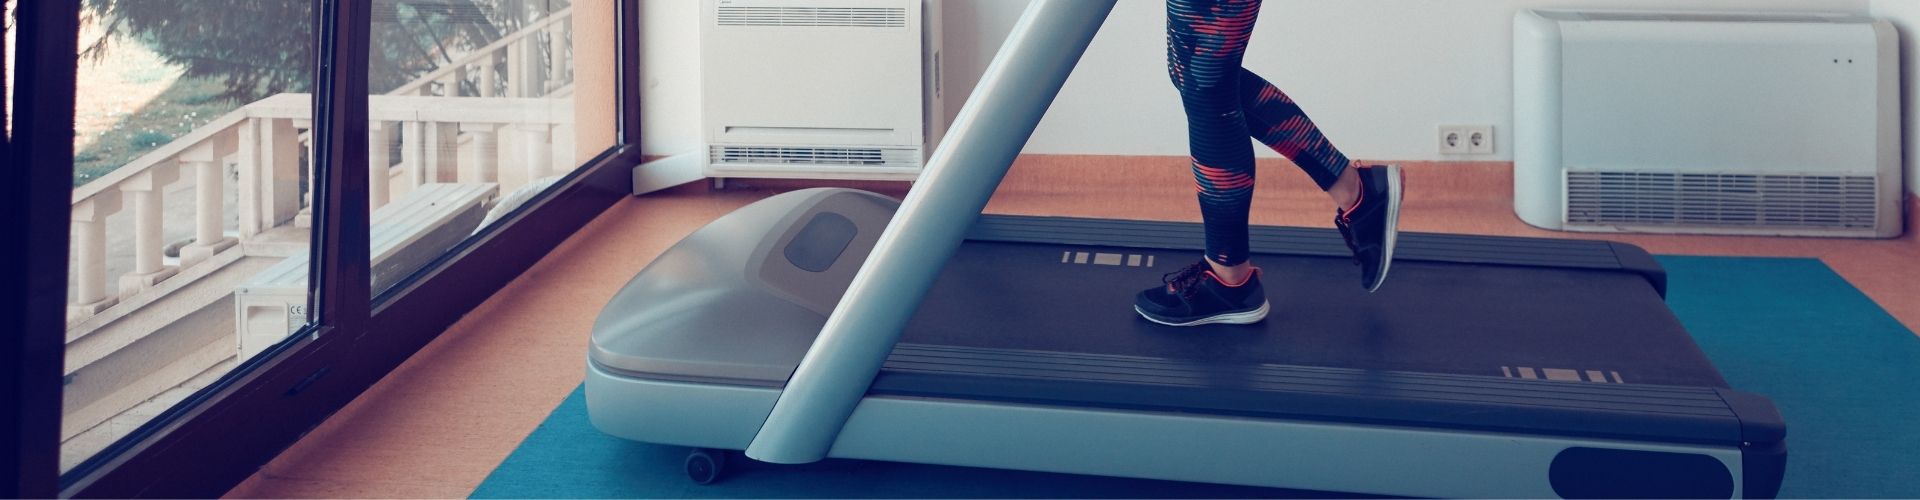 treadmill mat